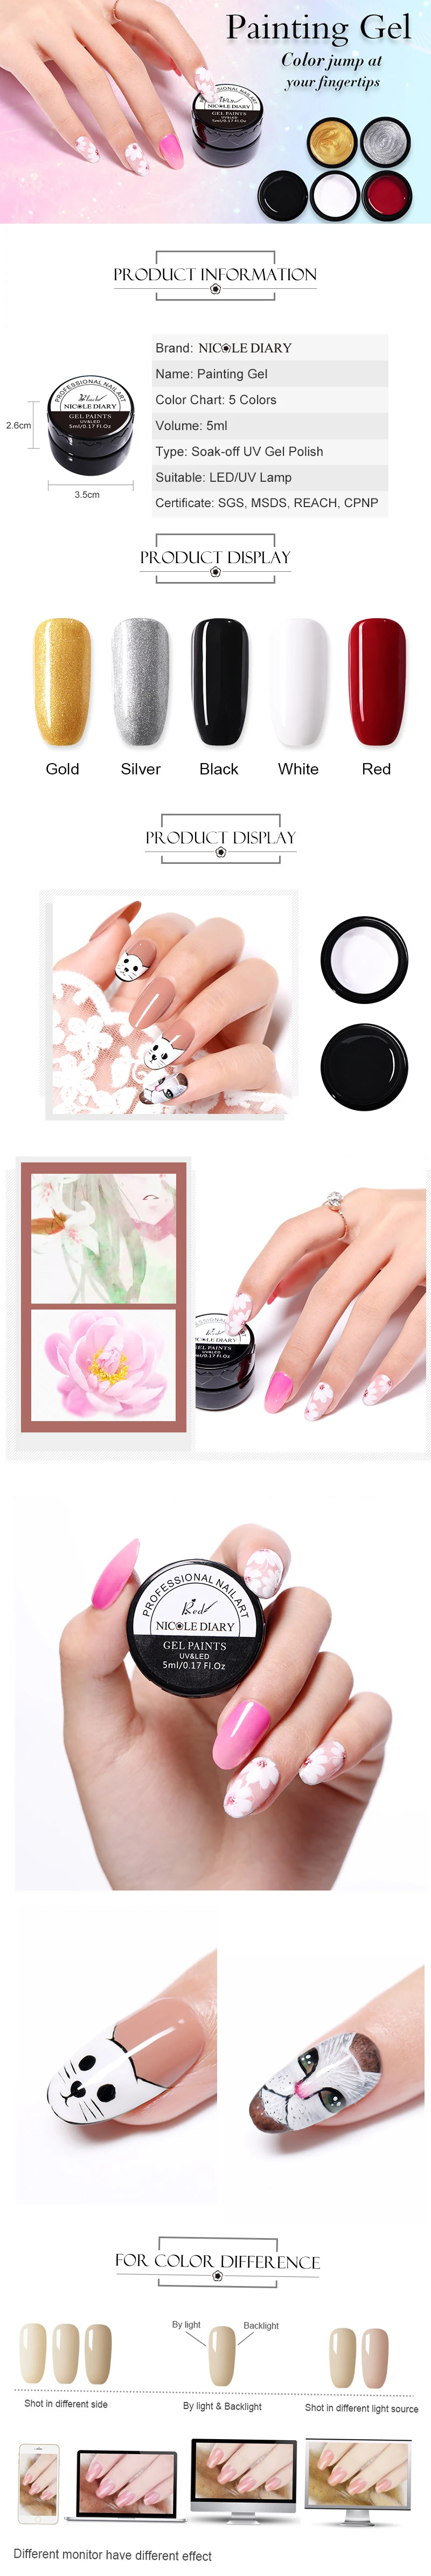 NICOLE DIARY 5 мл гель для краски 3D дизайн ногтей краска для рисования УФ-гель Замачивание УФ-гель для ногтей Дизайн ногтей для DIY